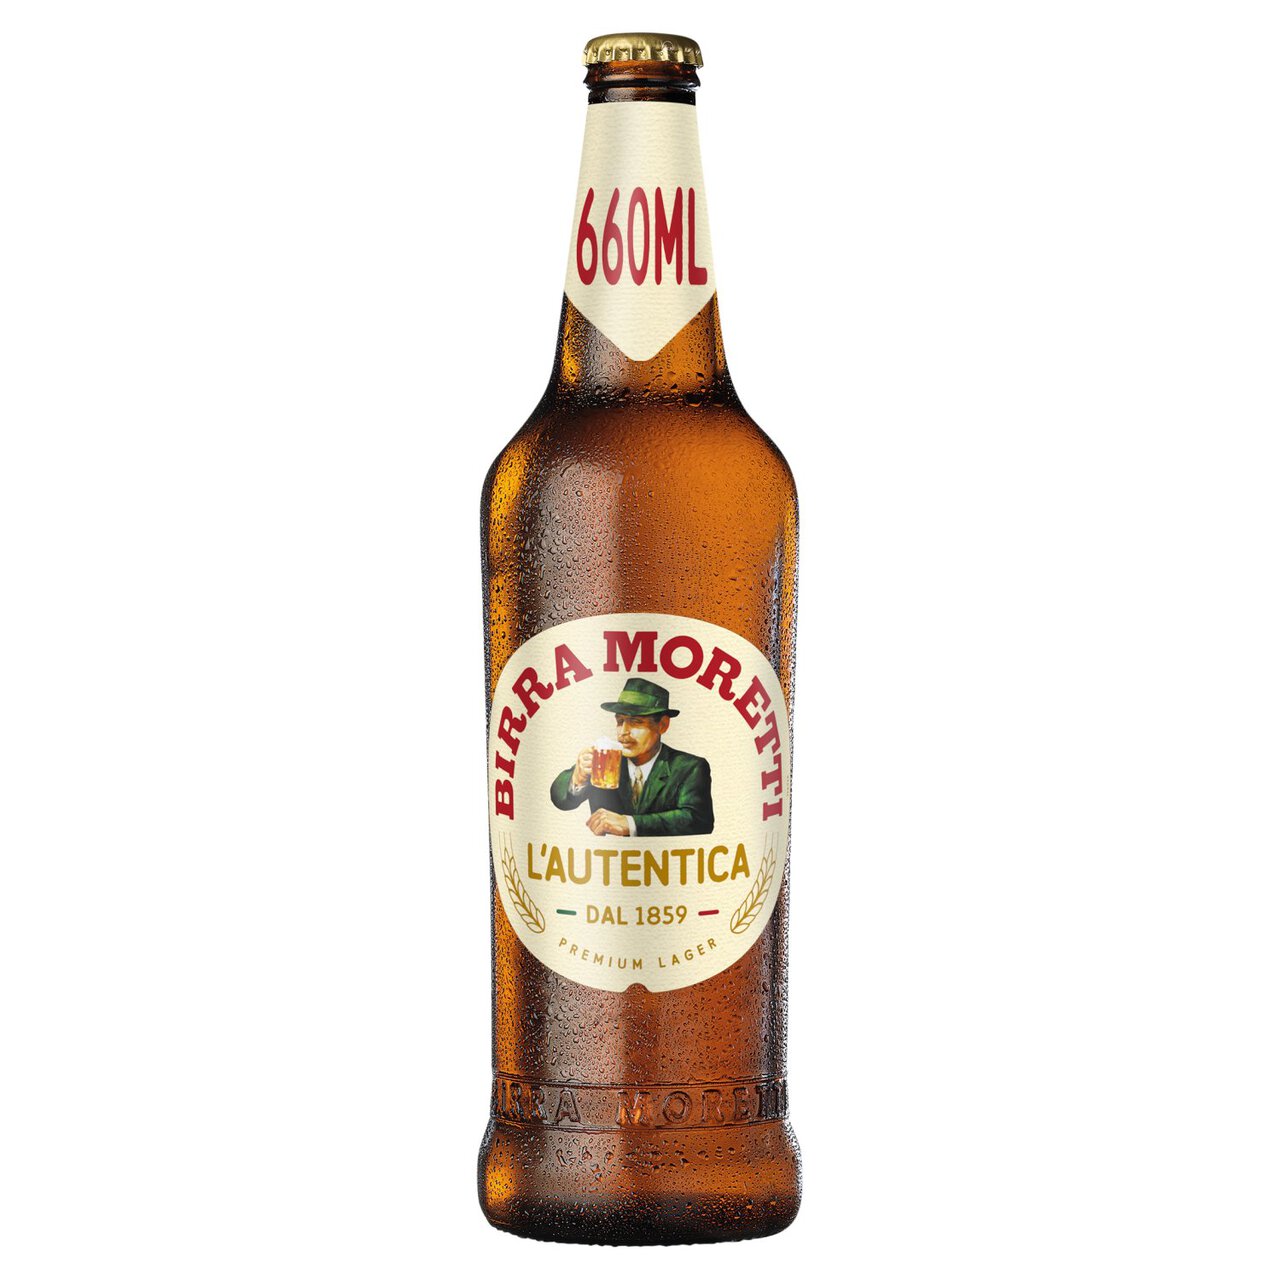 Birra Moretti Lager Beer Bottle 660ml